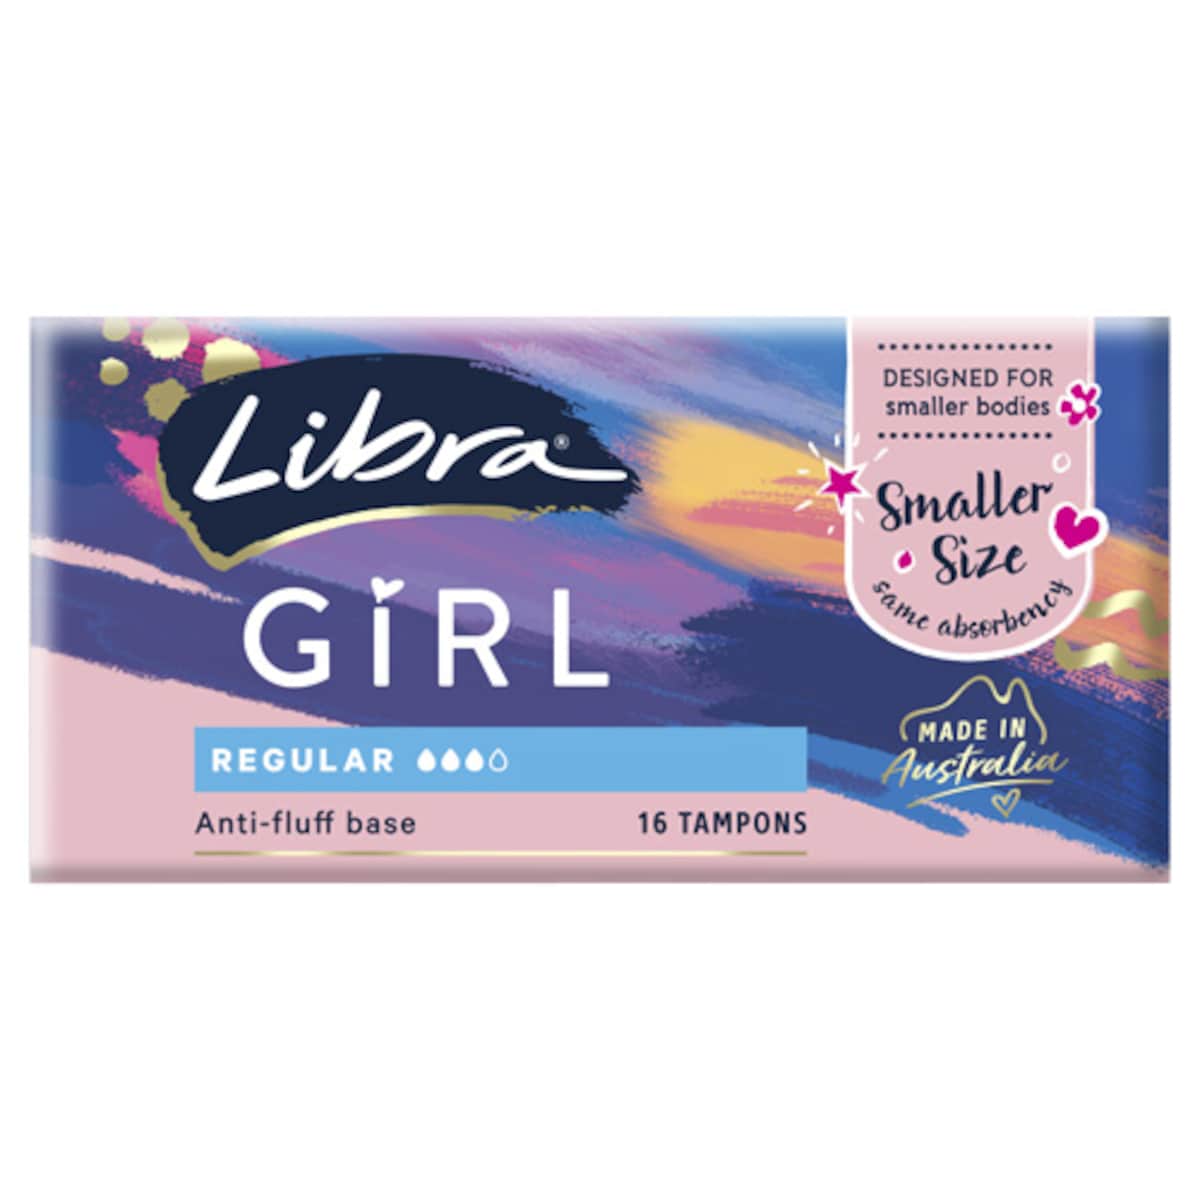 Libra Girl Regular Tampon 16 Pack